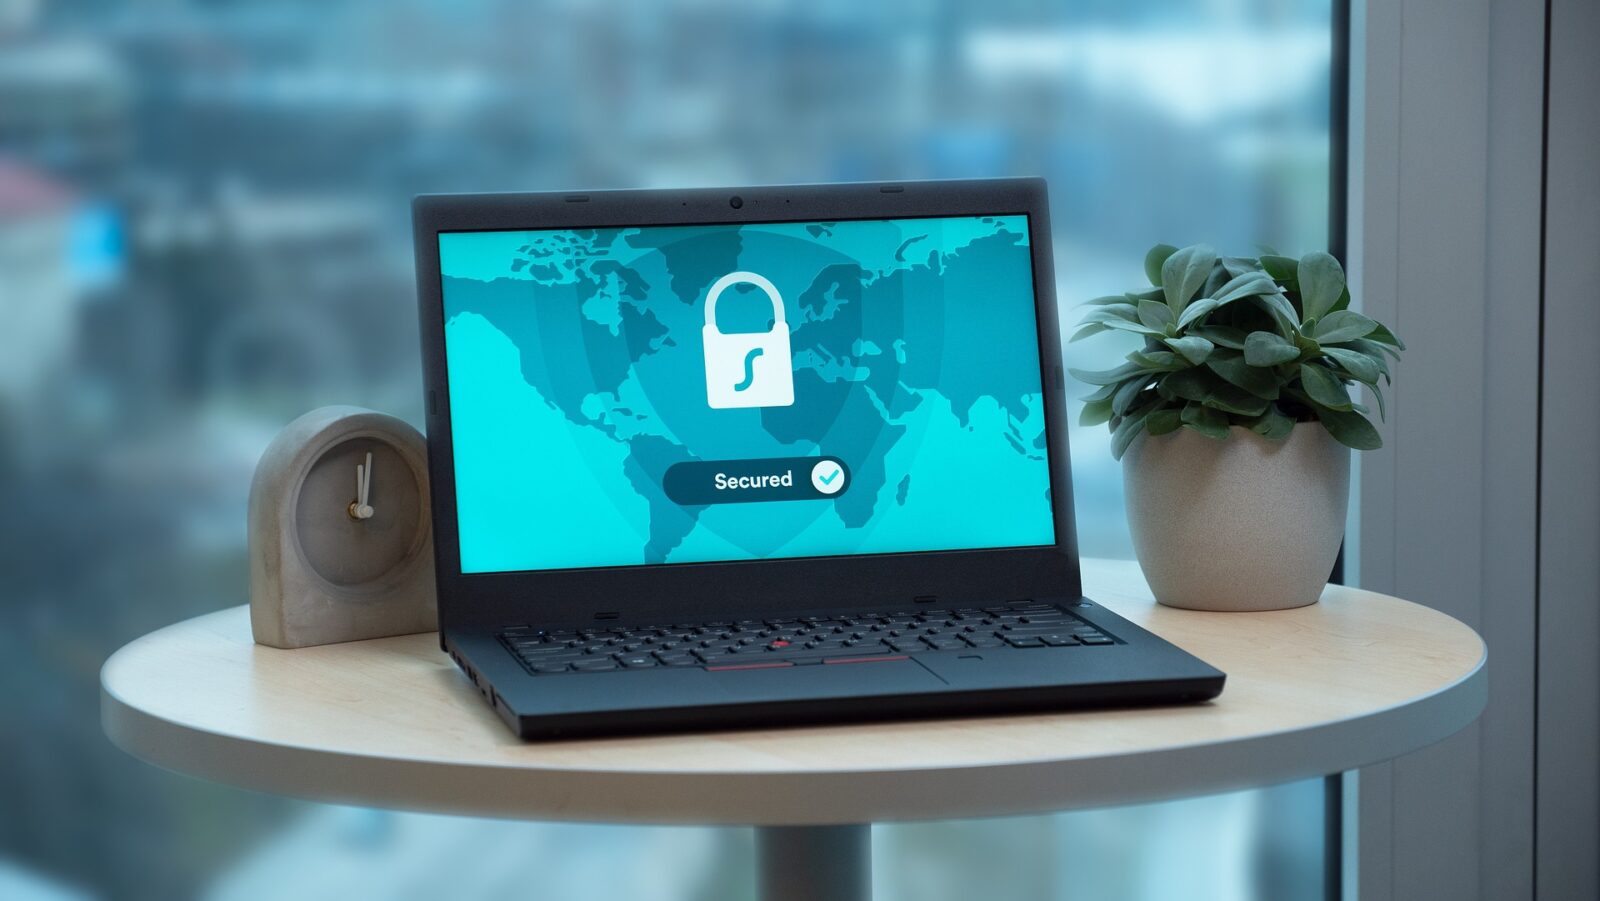 Переваги використання VPN для забезпечення конфіденційності та безпеки в Інтернеті